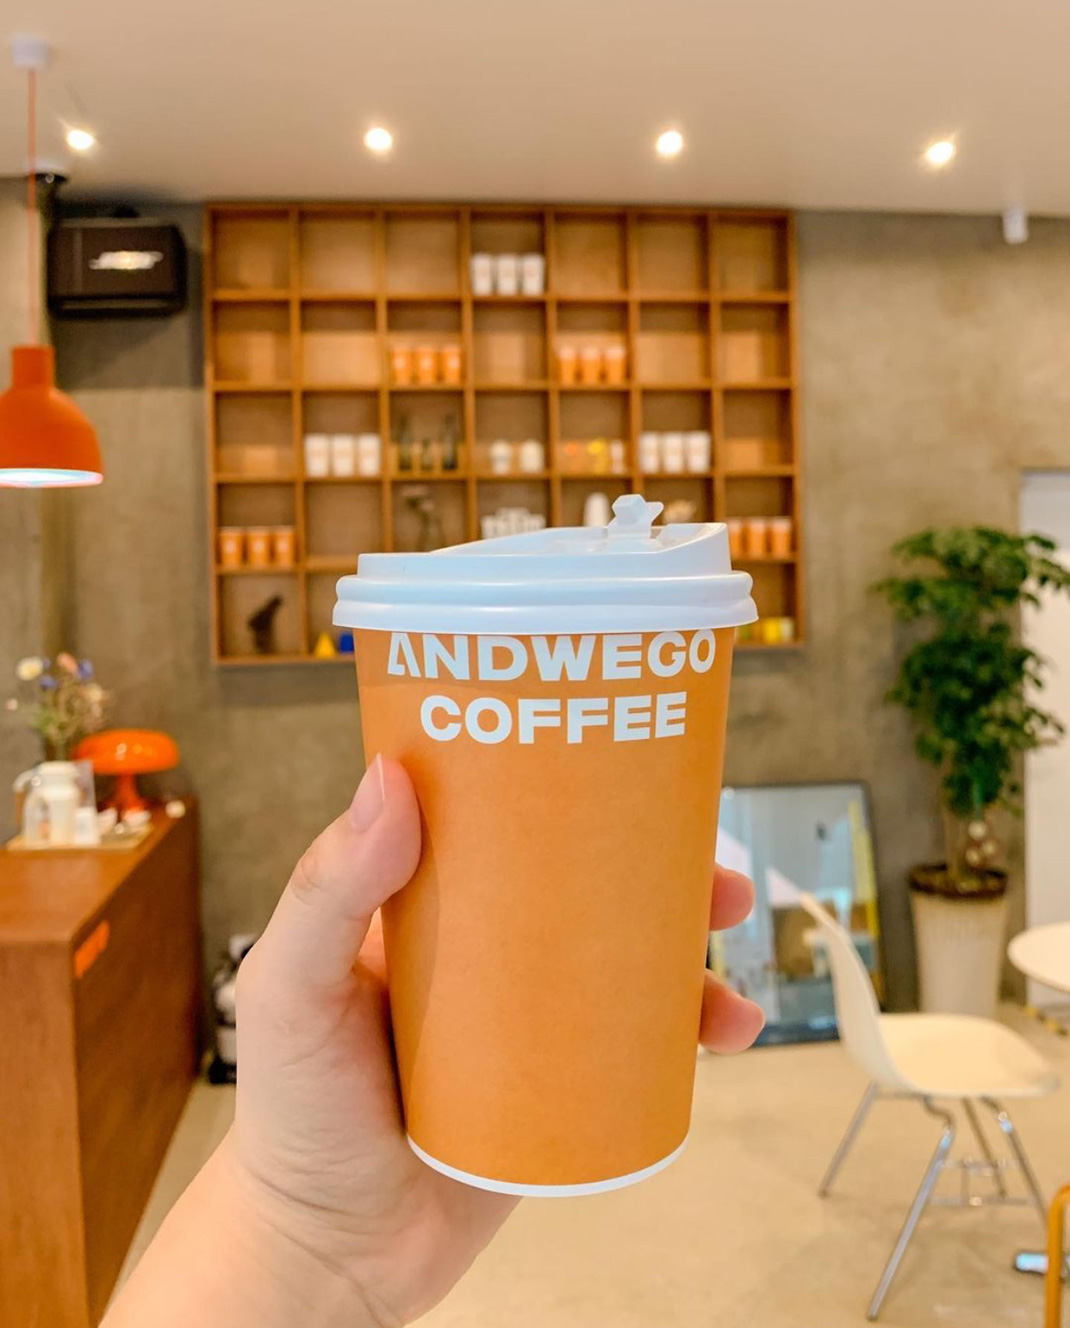 咖啡店ANDWEGO COFFEE 韩国 咖啡店 字体设计 街铺 logo设计 vi设计 空间设计